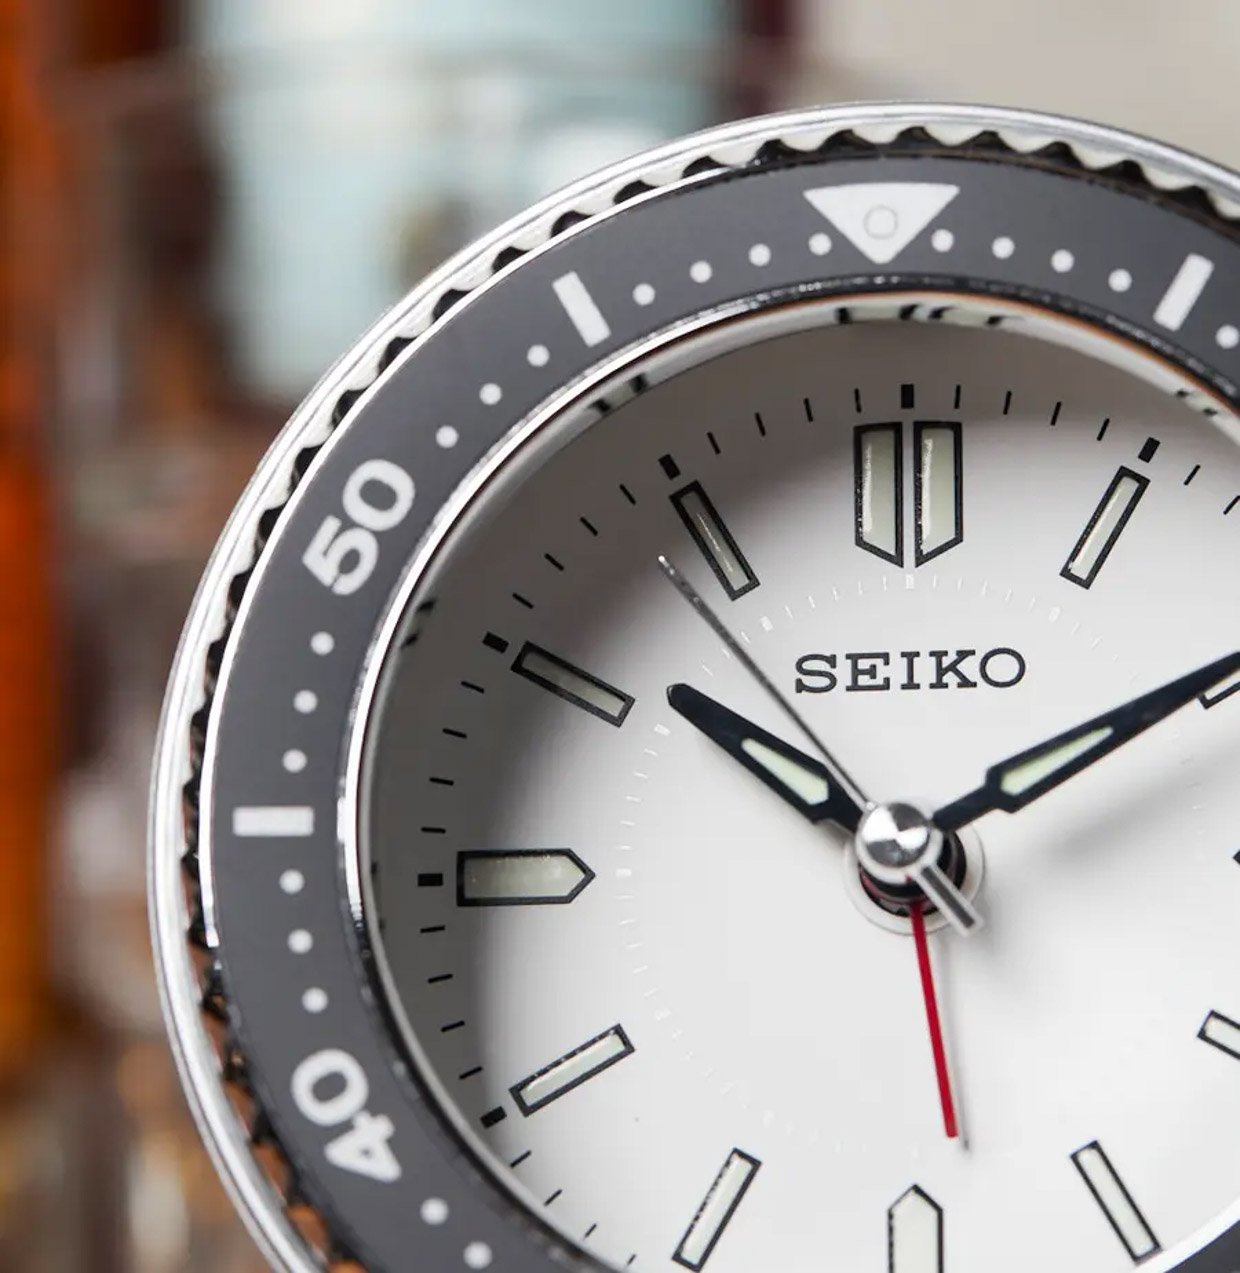 Seiko Mai Alarm Clock